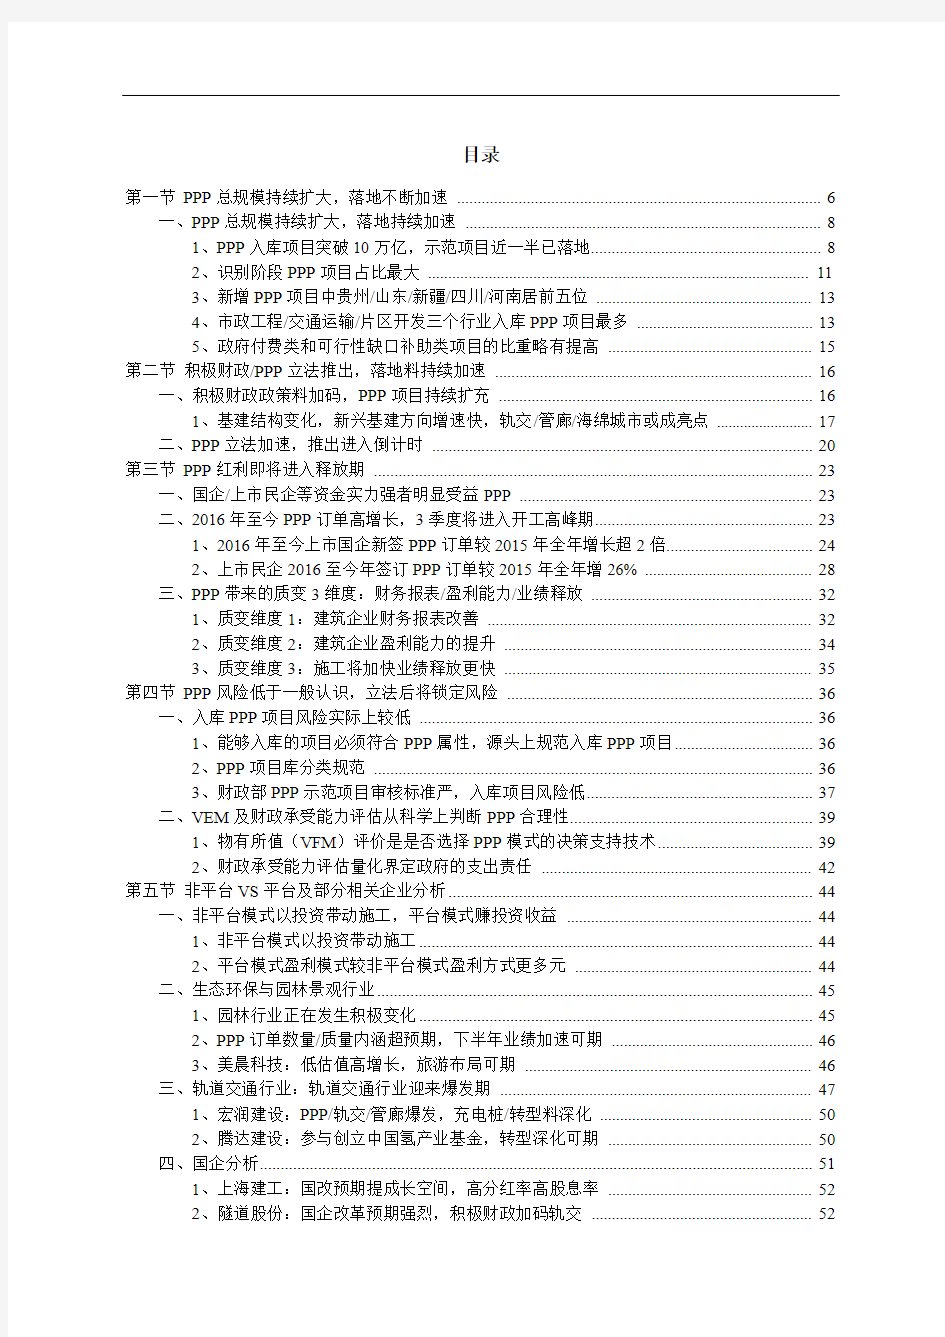 中国PPP行业市场调研分析报告